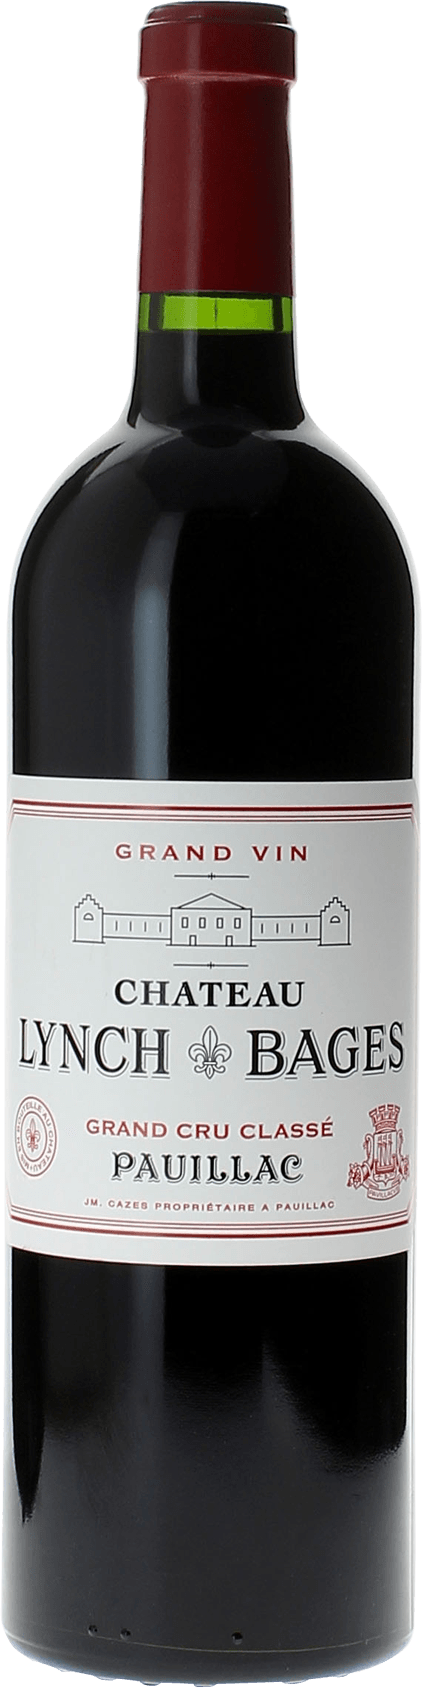 Lynch bages 2006 5 me Grand cru class Pauillac, Bordeaux rouge